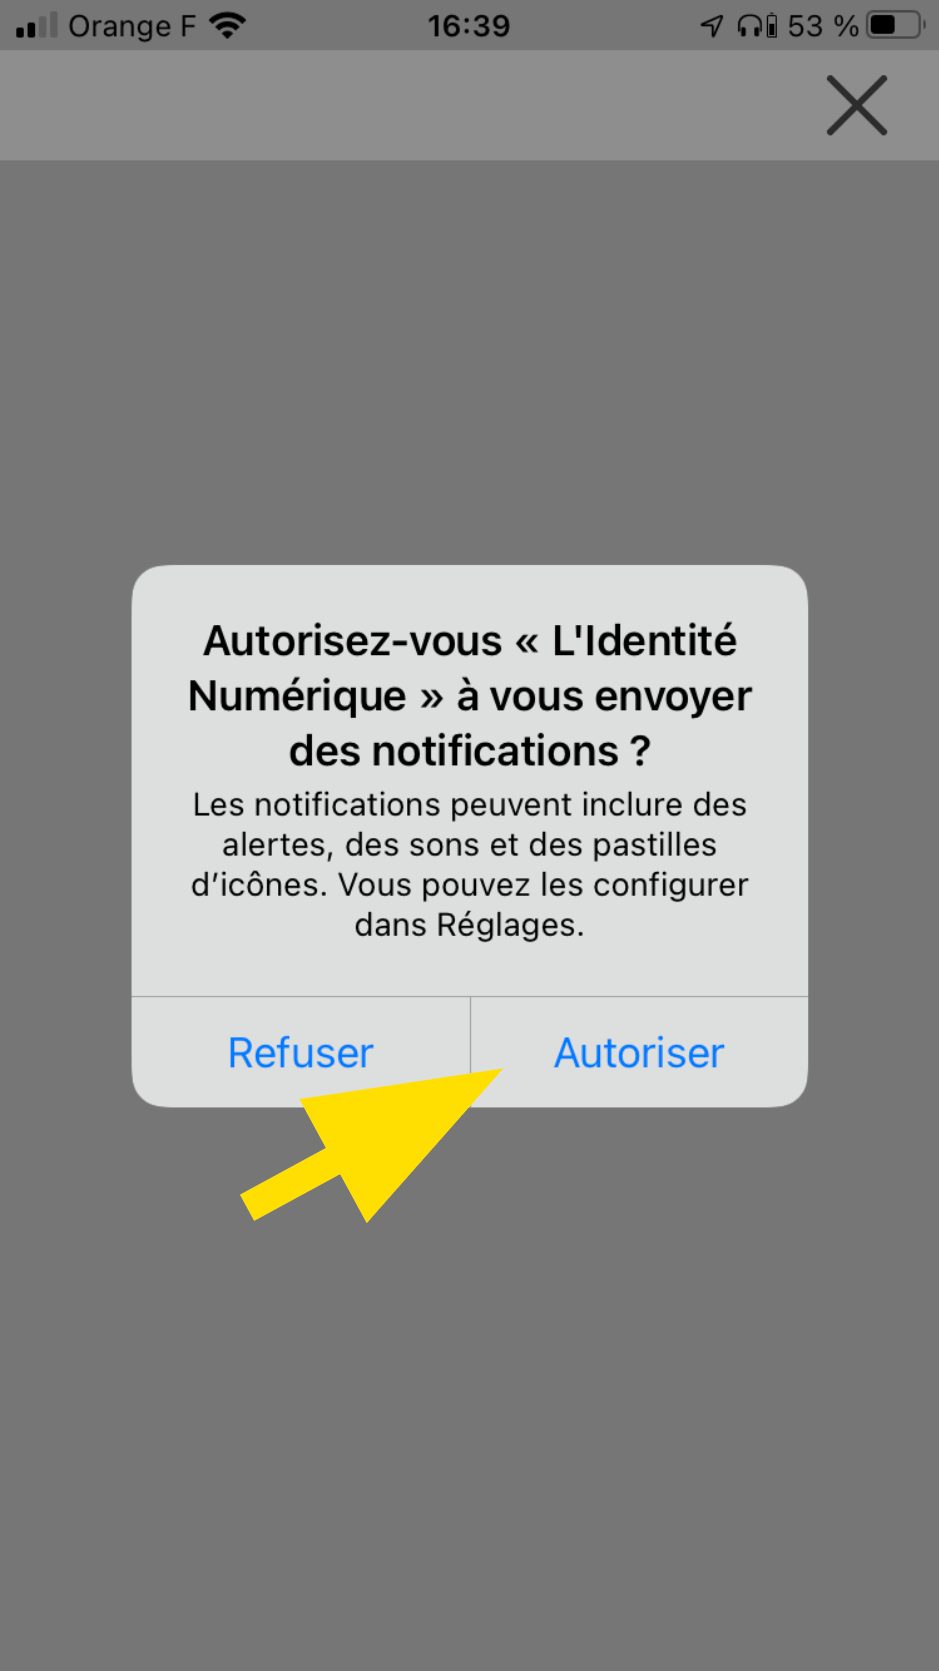 Activation des notifications de l'application Identité Numérique La Poste